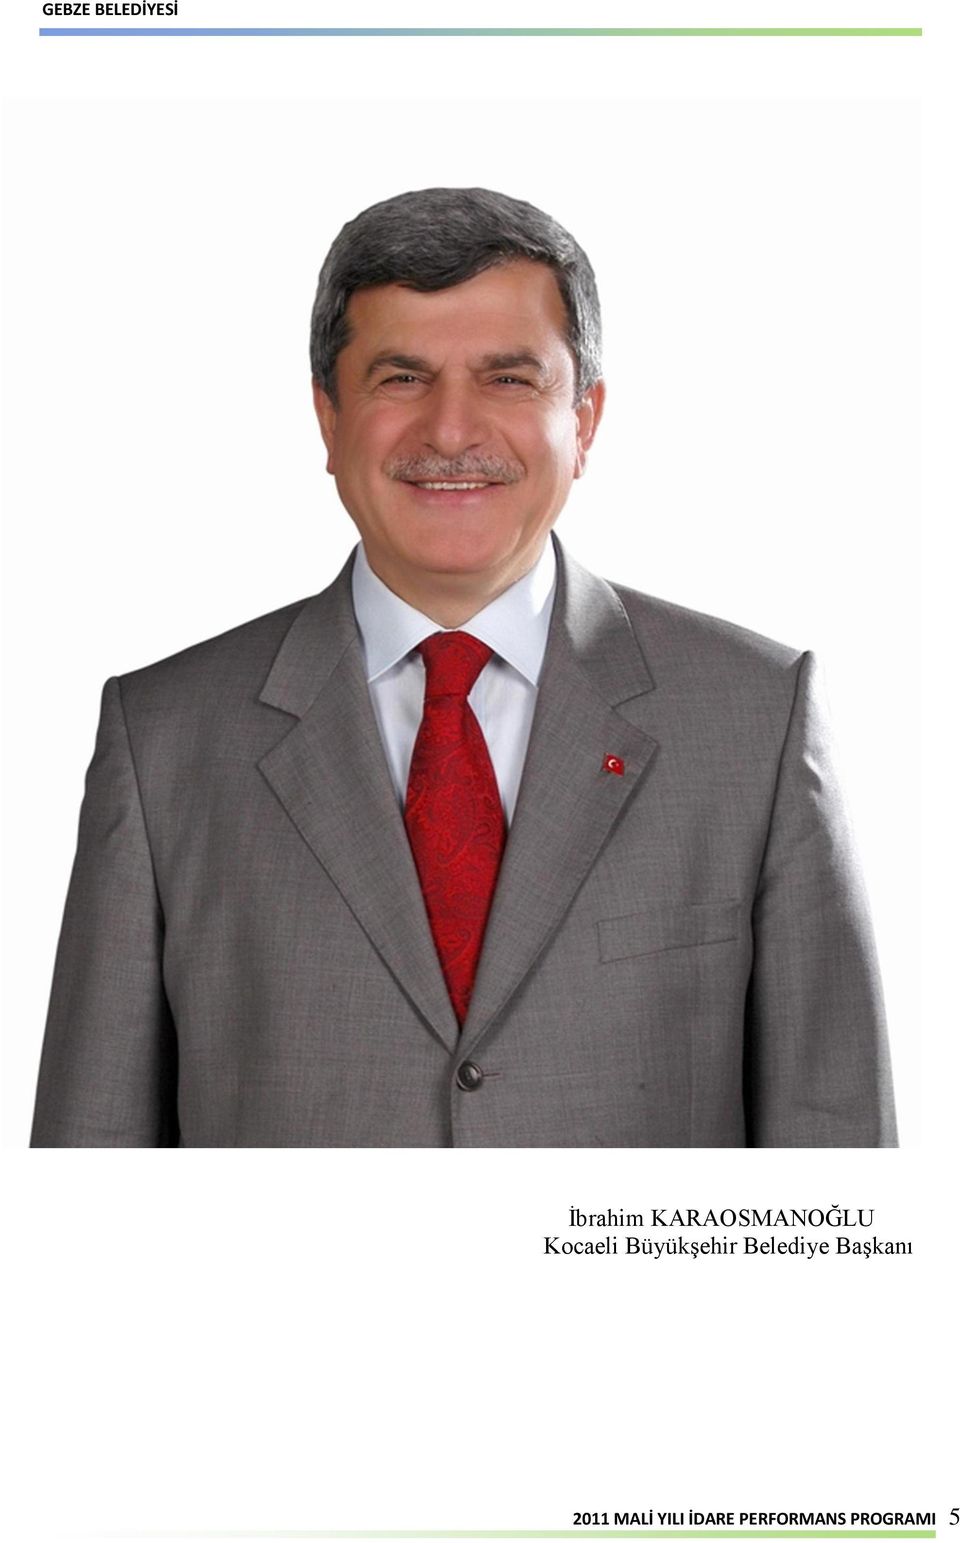 Belediye Başkanı 2011